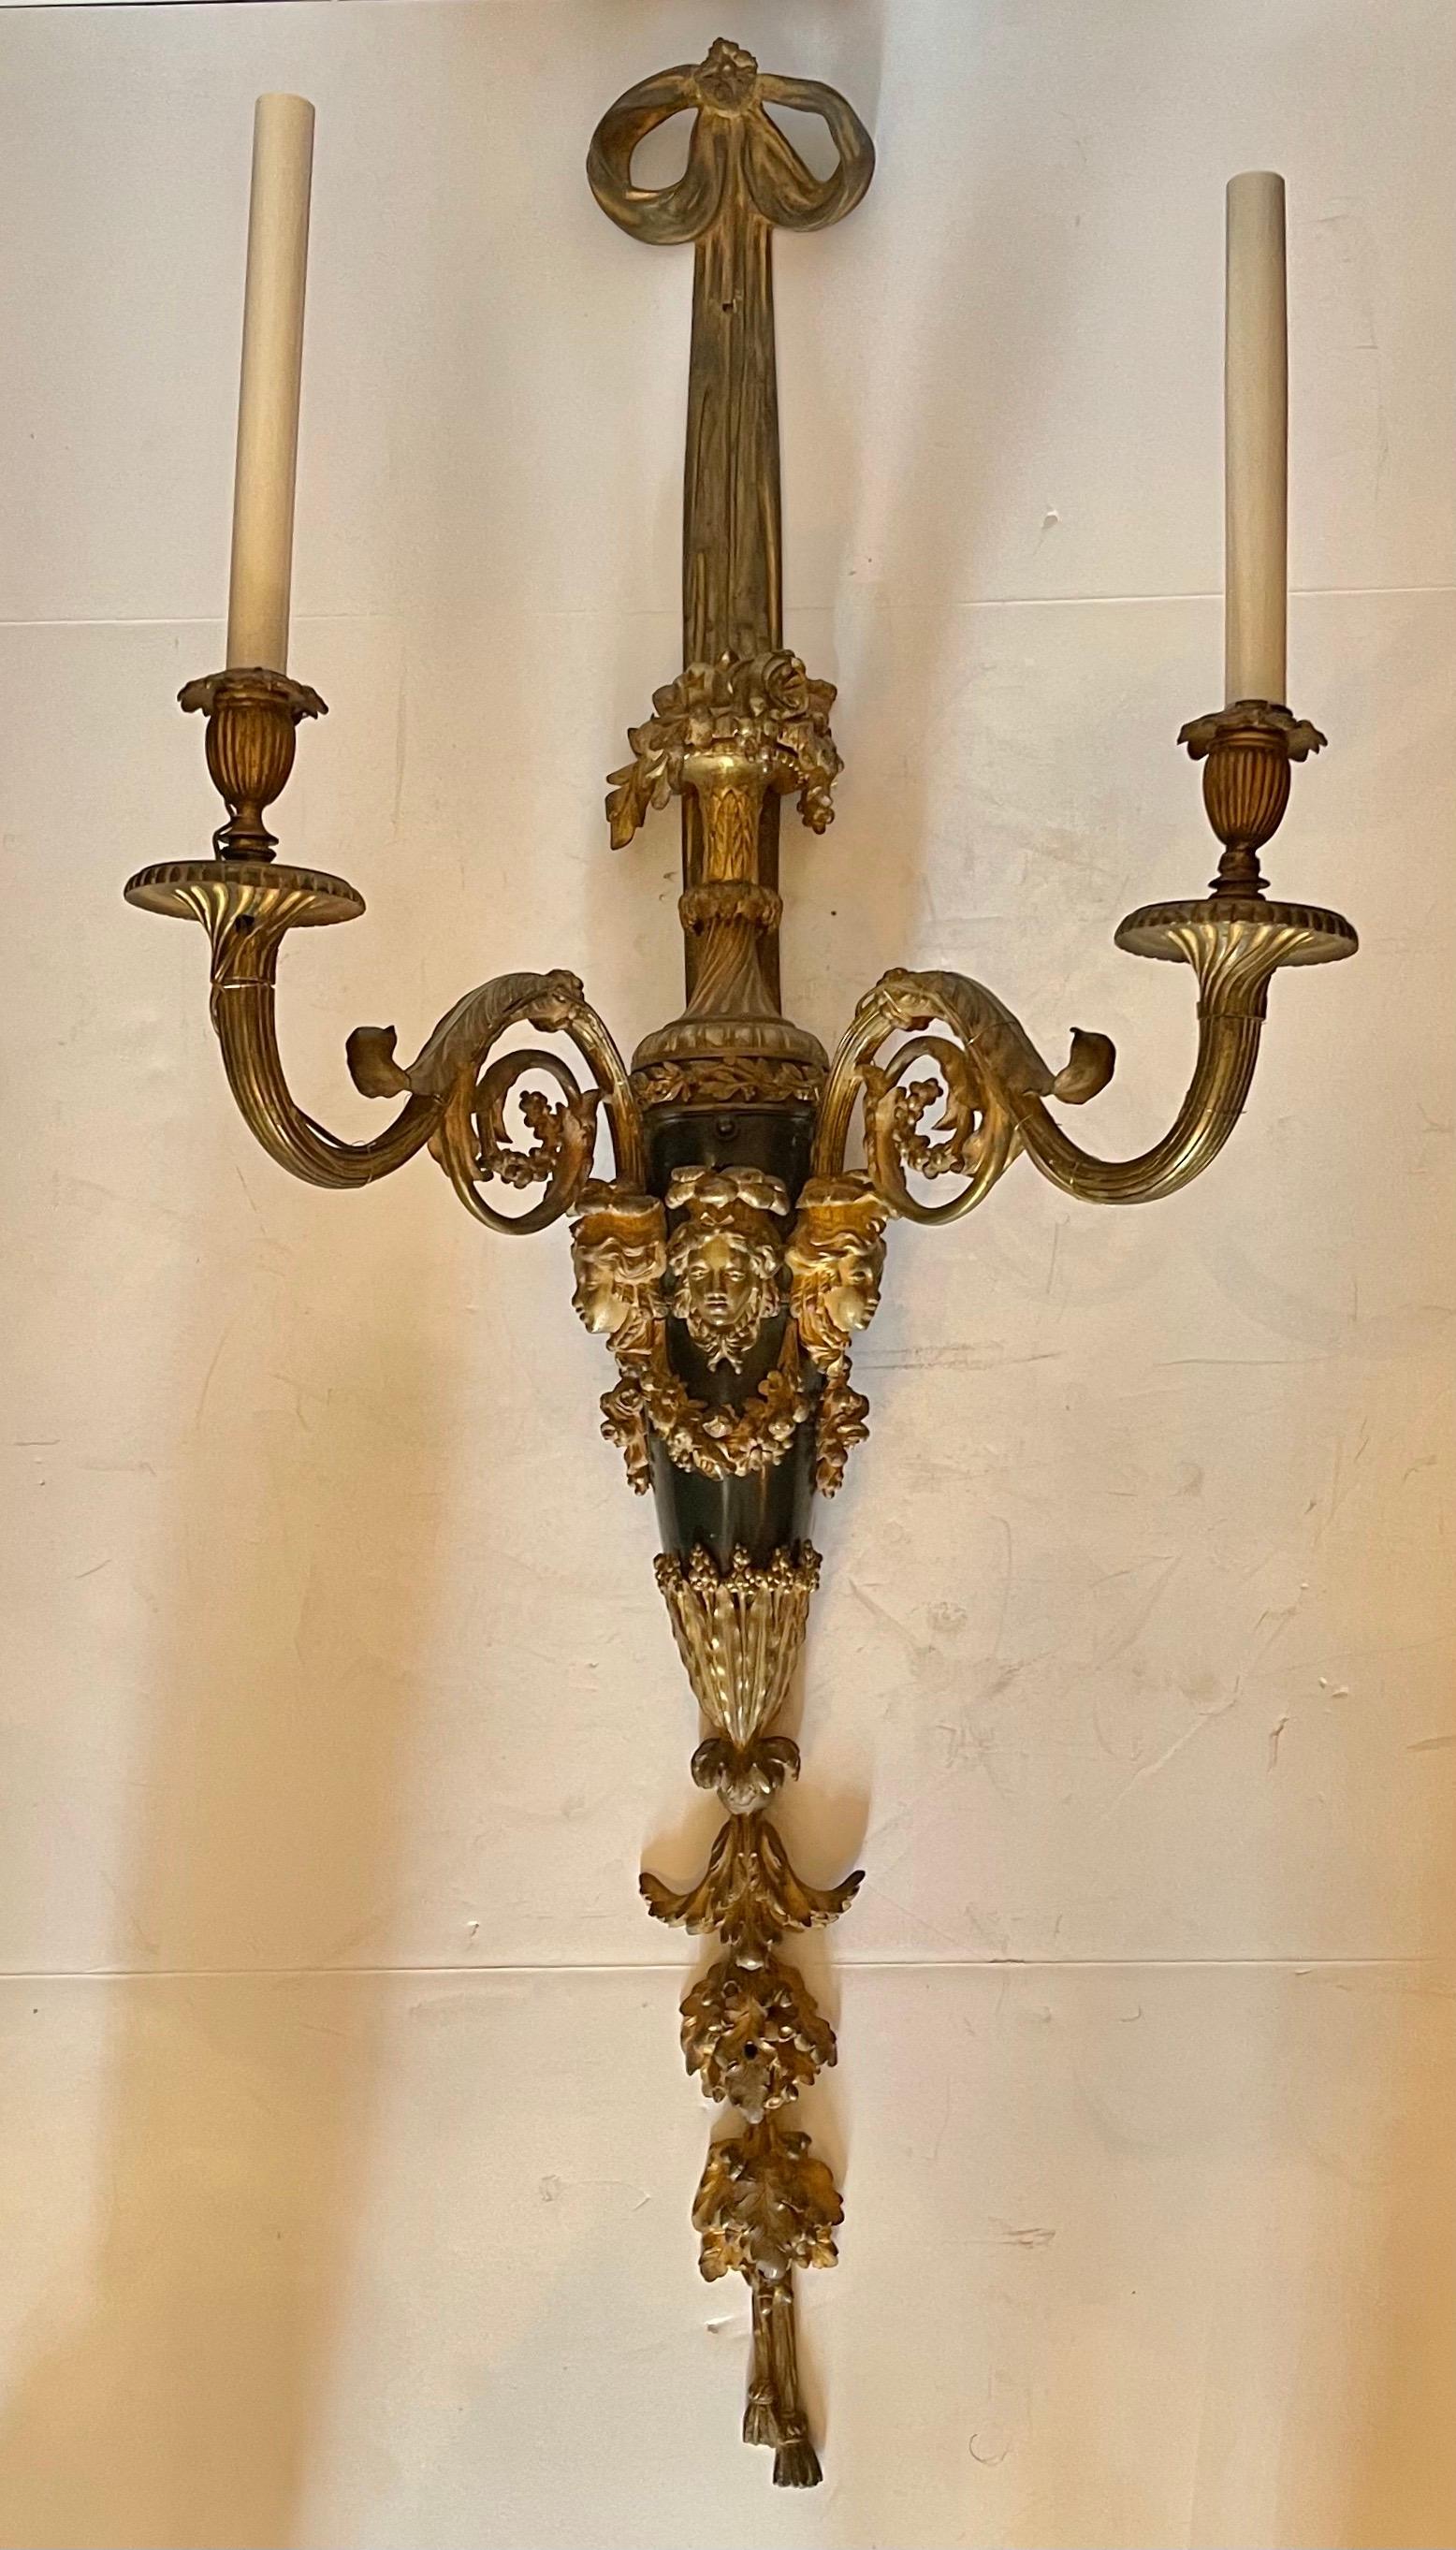 Merveilleuse paire d'appliques en bronze doré et patiné, de style Louis XVI. Ces appliques de taille monumentale et opulentes, ont 2 lumières de candélabre chacune avec des cannelures torsadées composées, des acanthes et des grappes de fruits. La